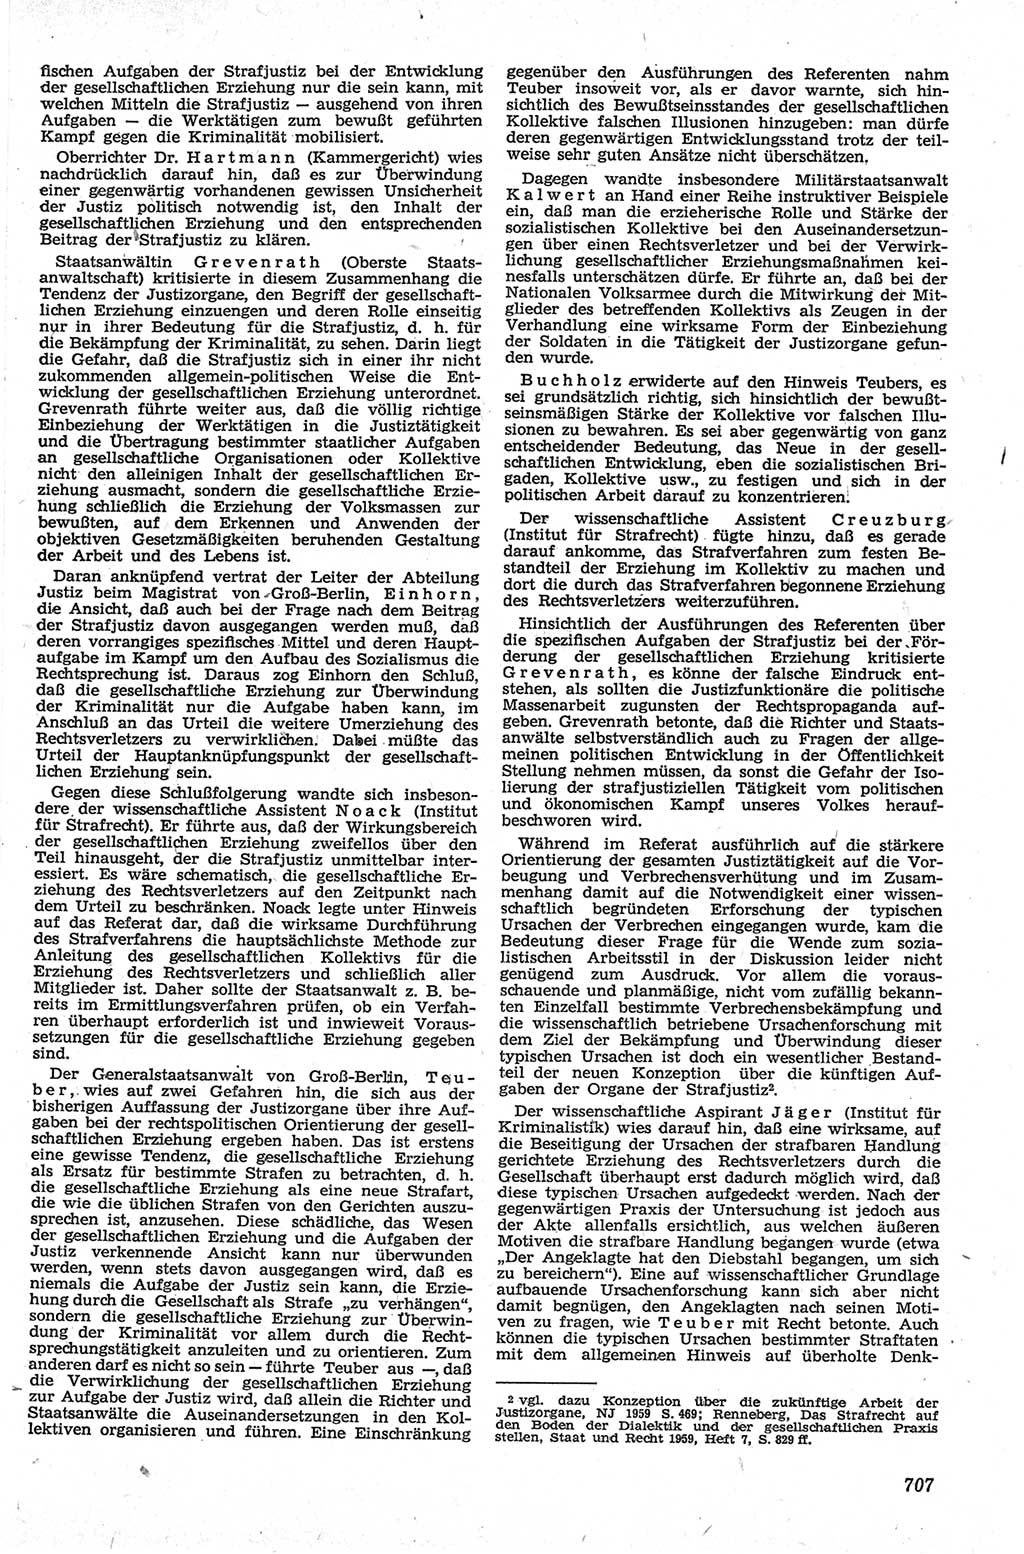 Neue Justiz (NJ), Zeitschrift für Recht und Rechtswissenschaft [Deutsche Demokratische Republik (DDR)], 13. Jahrgang 1959, Seite 707 (NJ DDR 1959, S. 707)